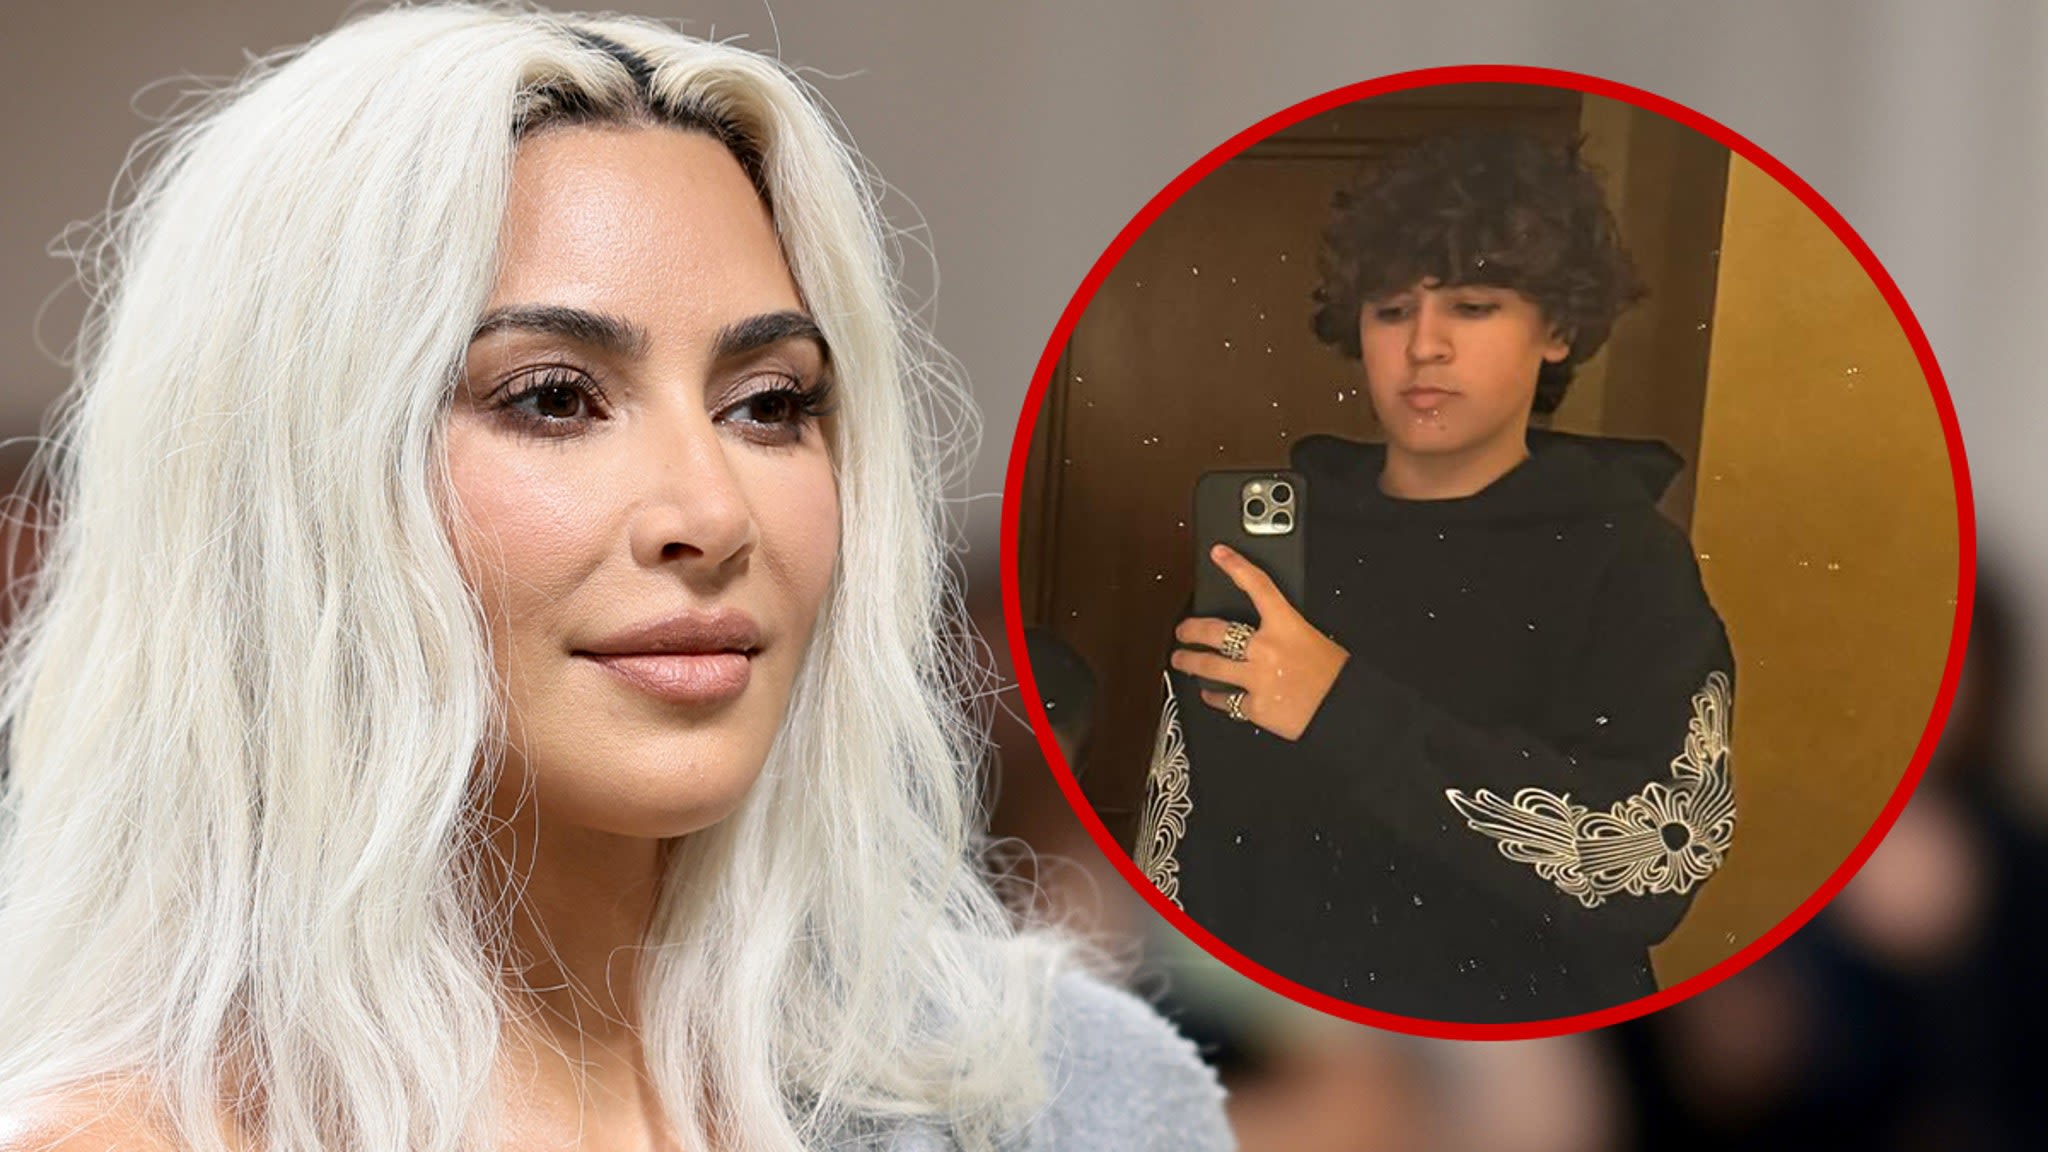 Kim Kardashian Tells People to Follow Mason Disick, Who's Now on Instagram